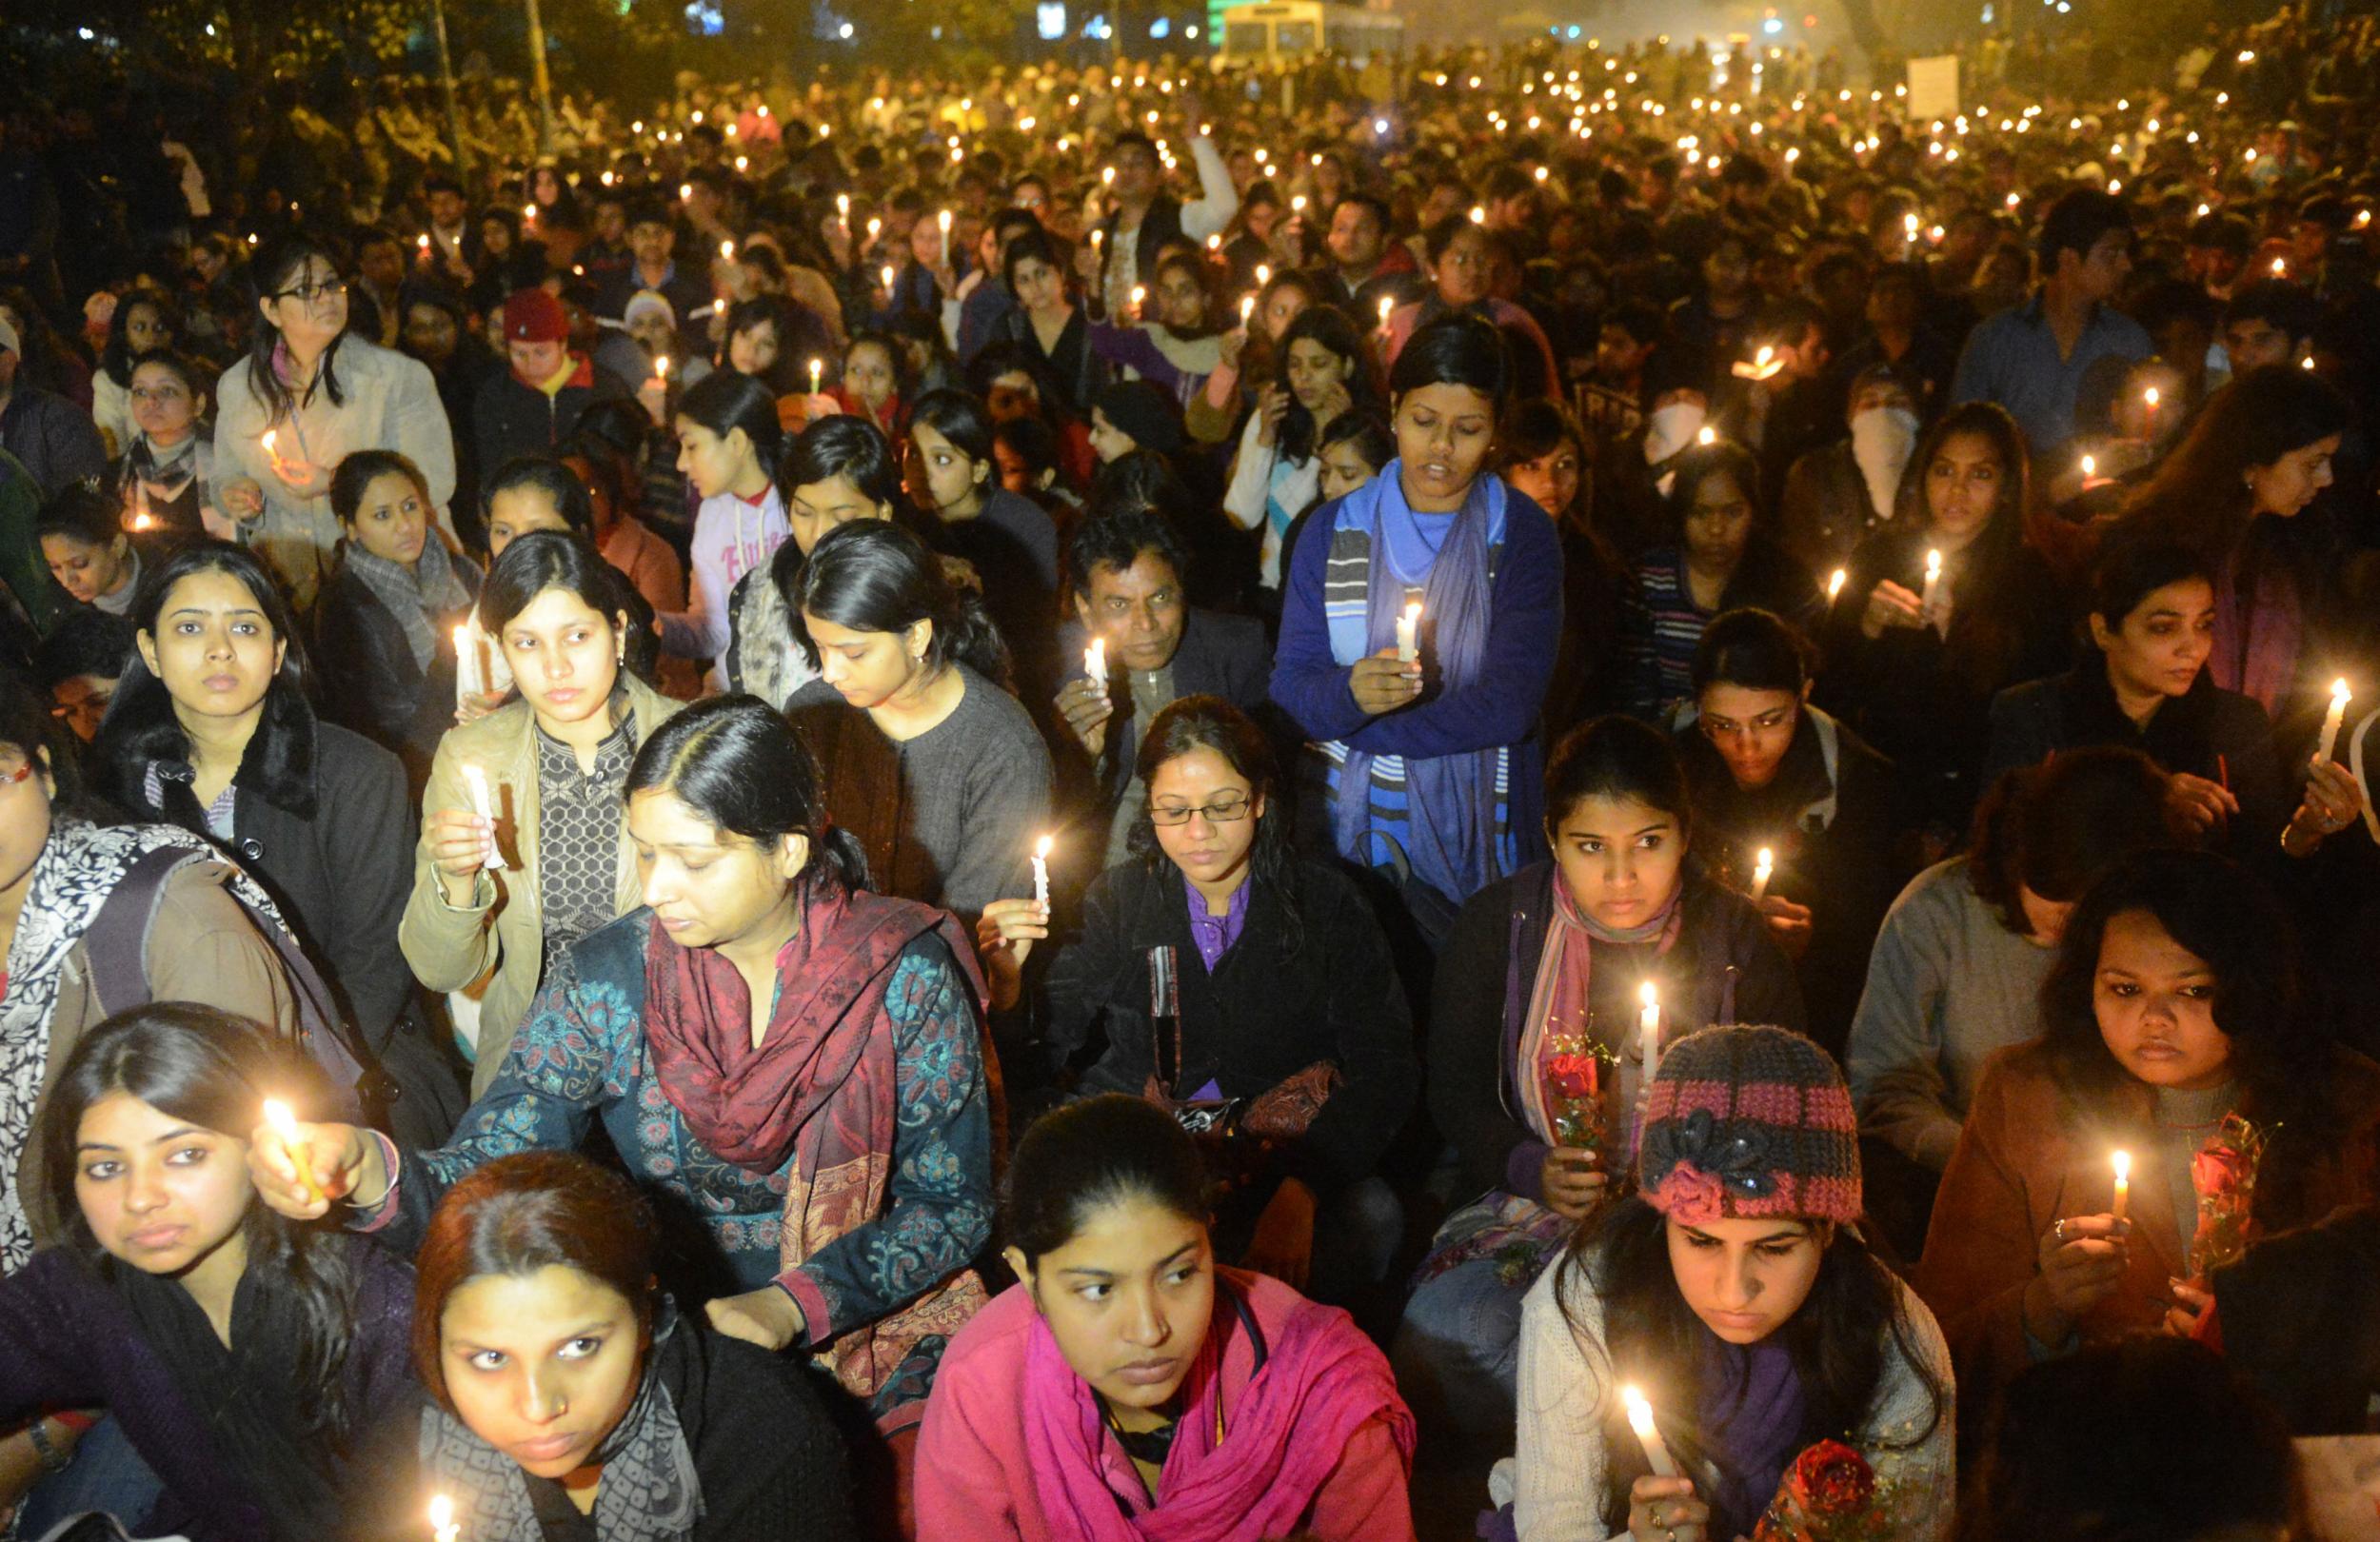 The Delhi gang rape sent shockwaves around the world